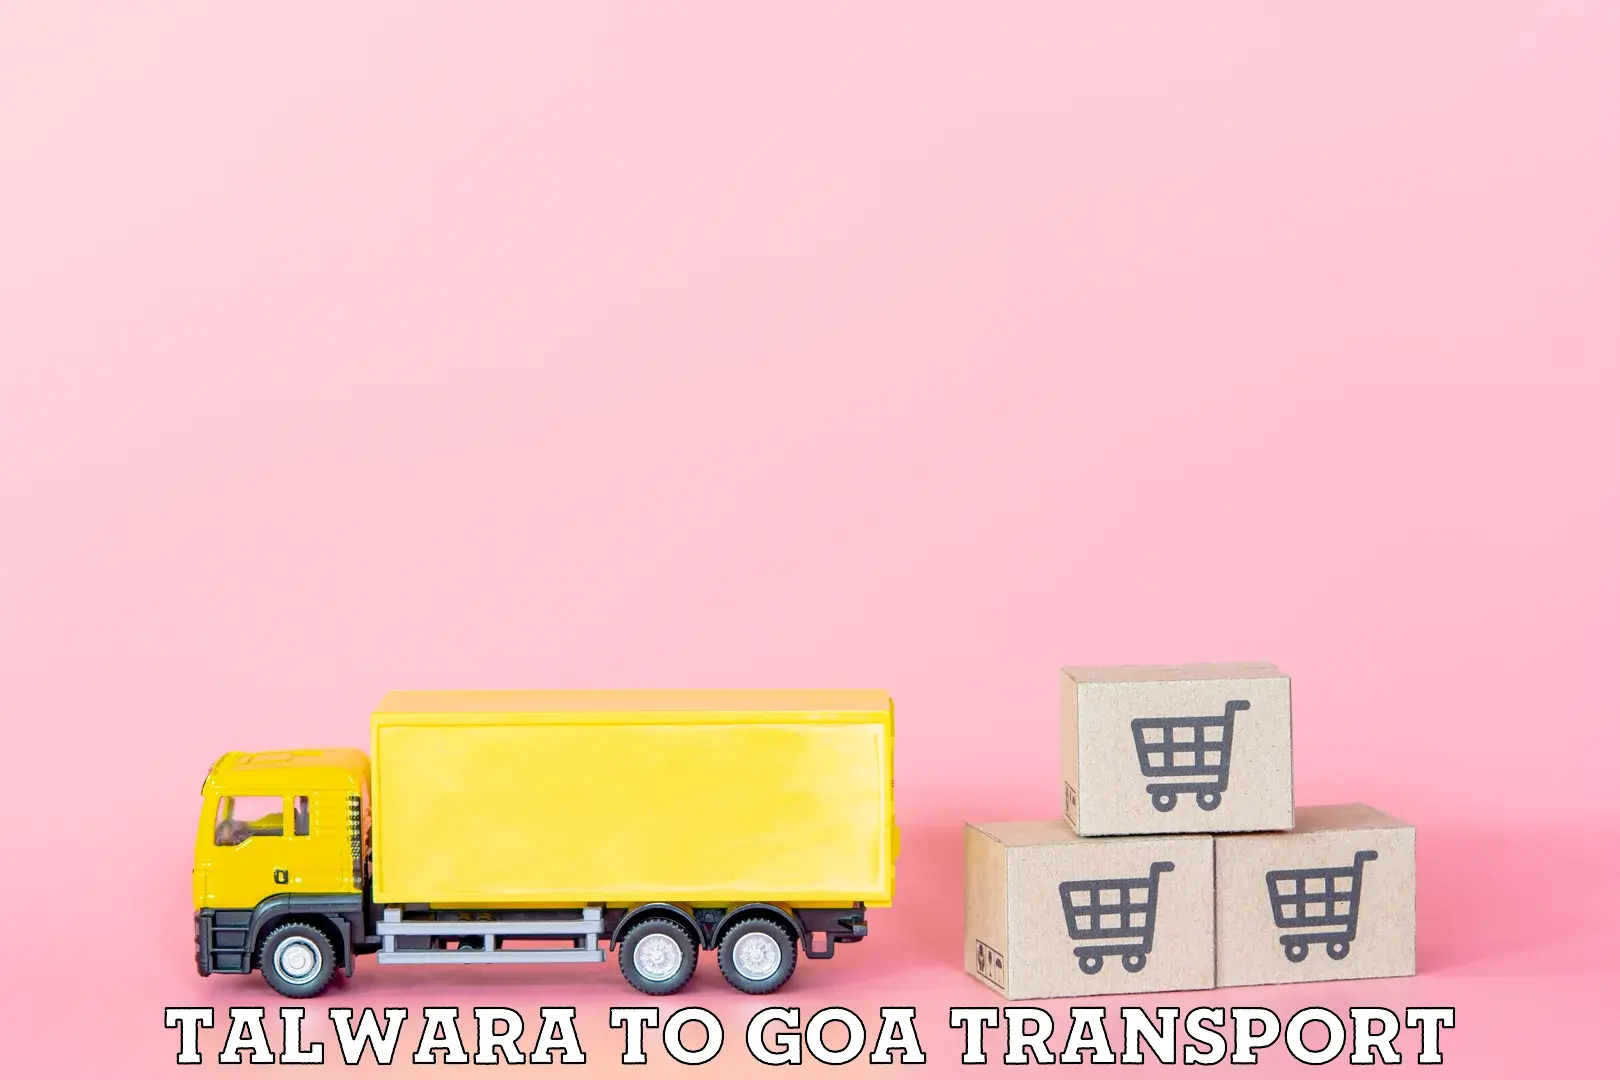 Interstate goods transport Talwara to IIT Goa